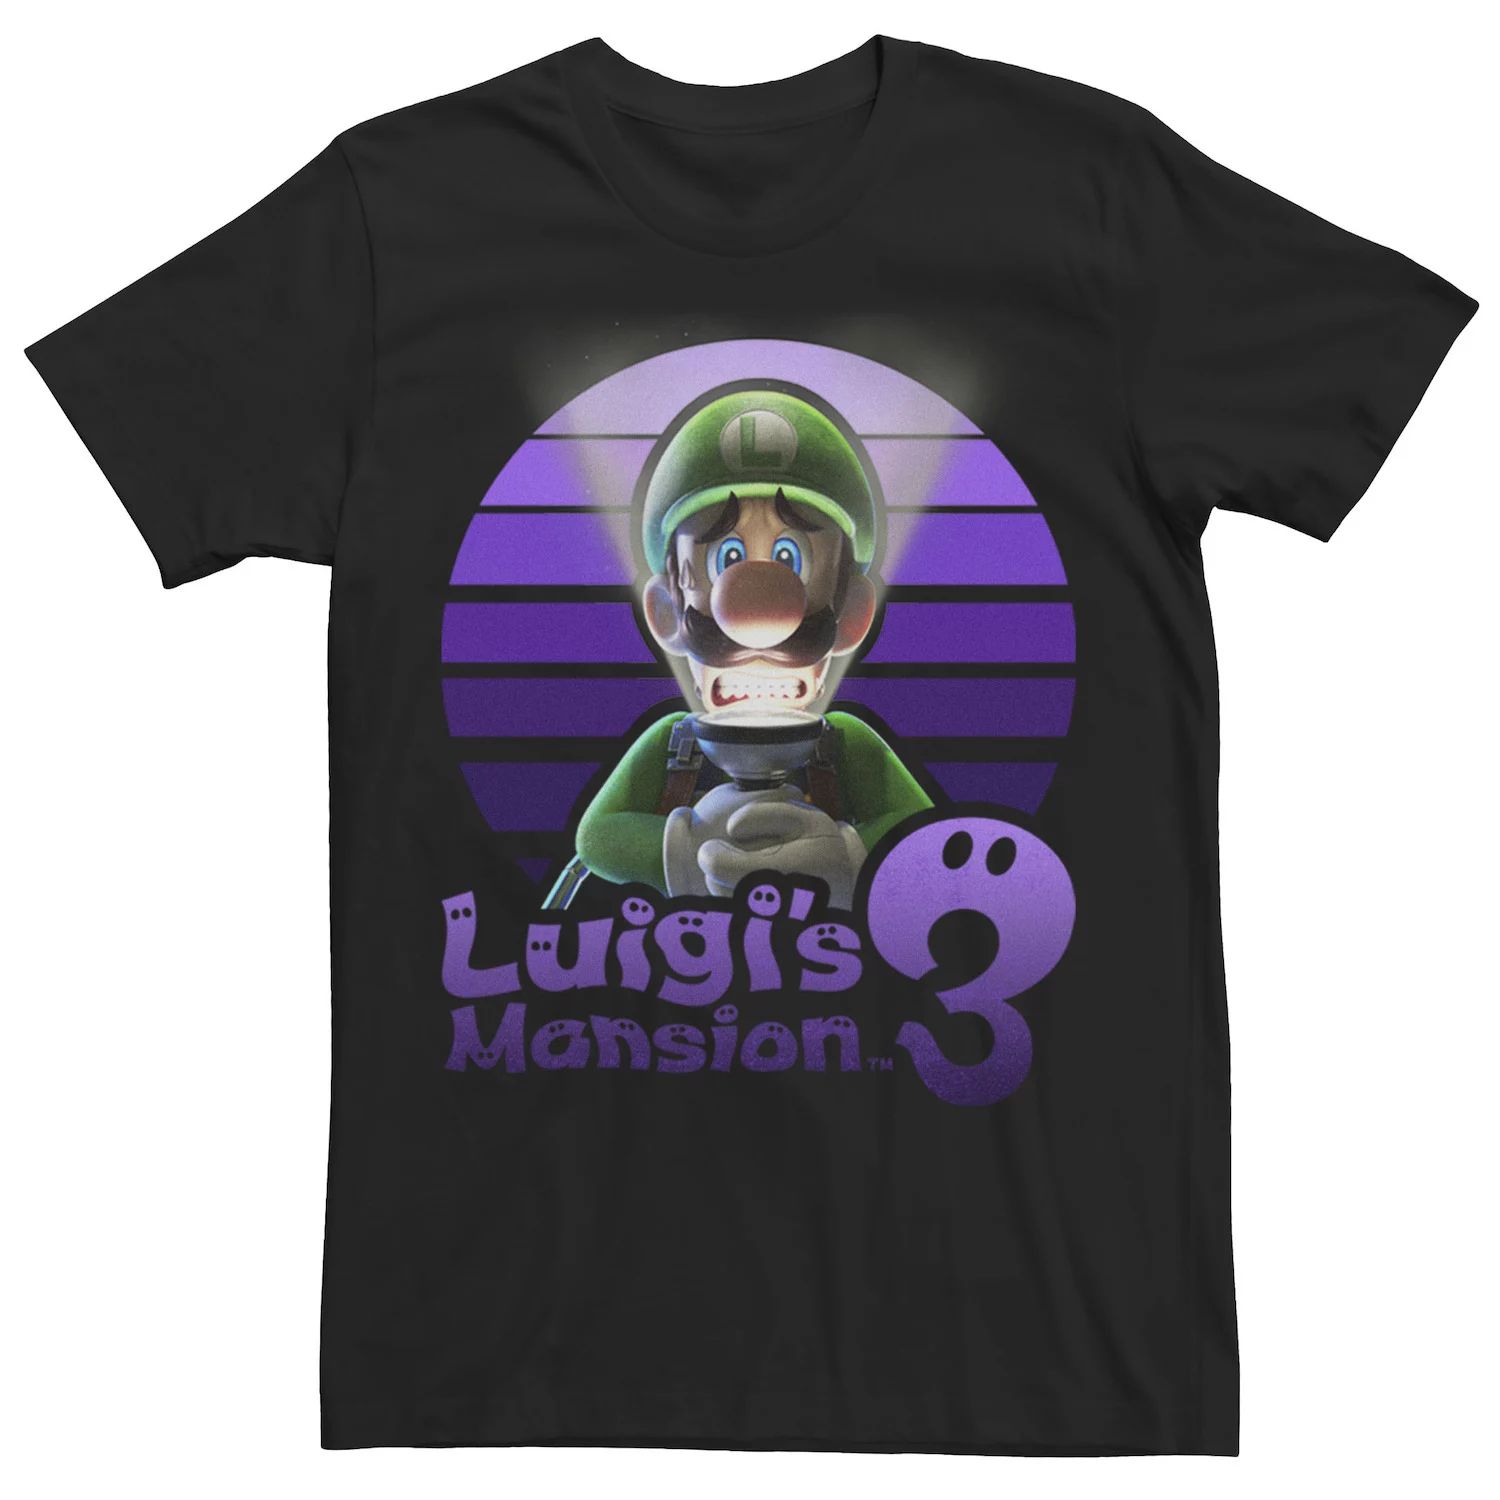 Мужская футболка Luigi's Mansion 3 Luigi фиолетового цвета с портретом Licensed Character